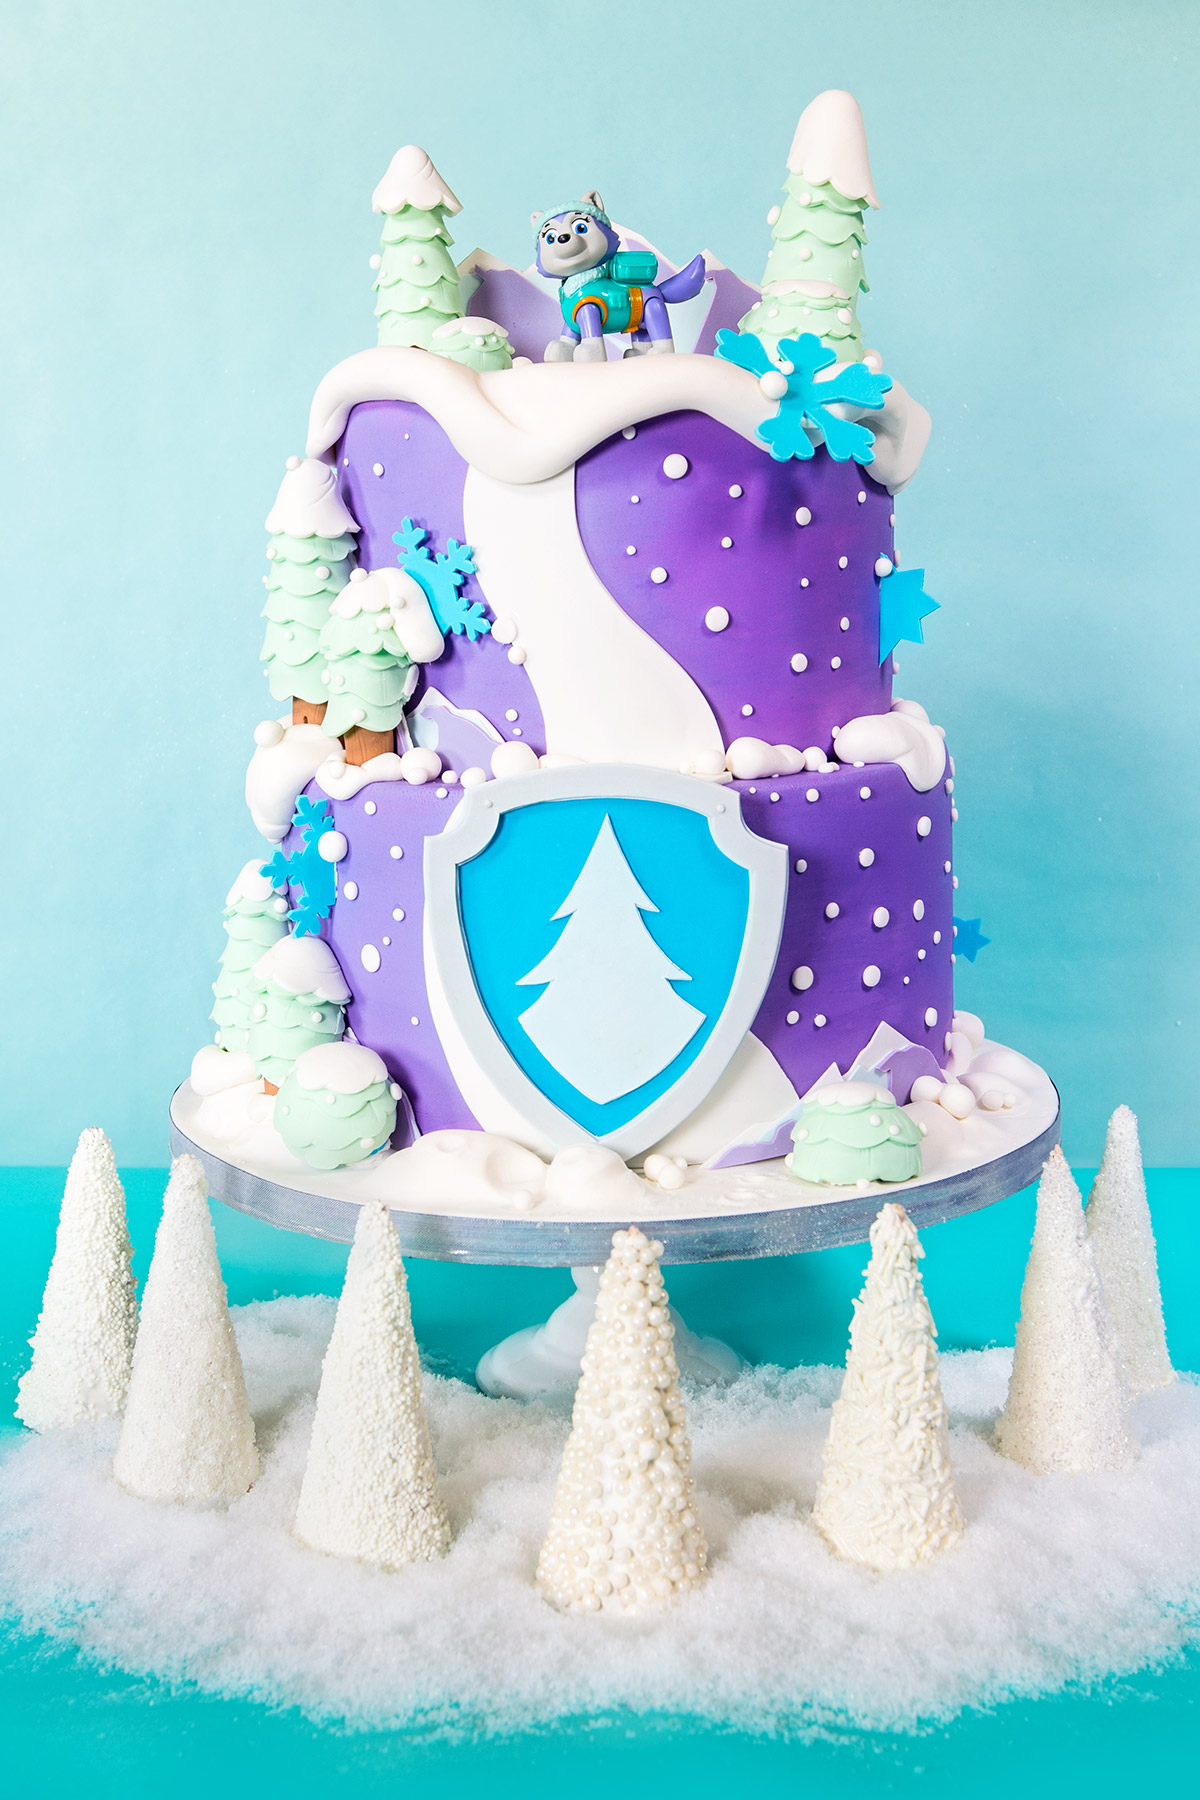 Everest Winter Wonderland Birthday Cake